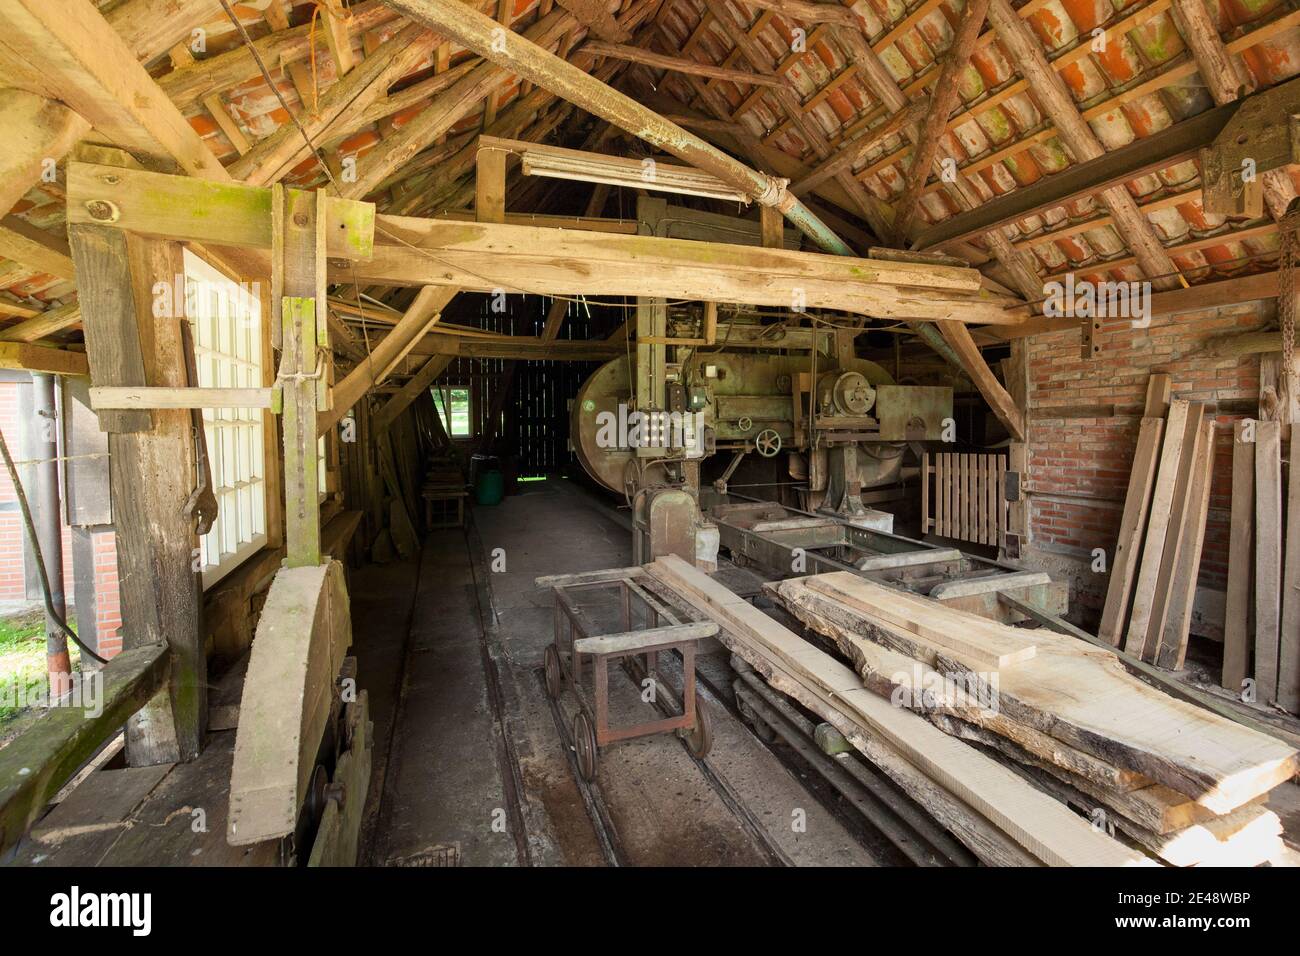 Historic sawmills in Halle, Grafschaft Bentheim Stock Photo